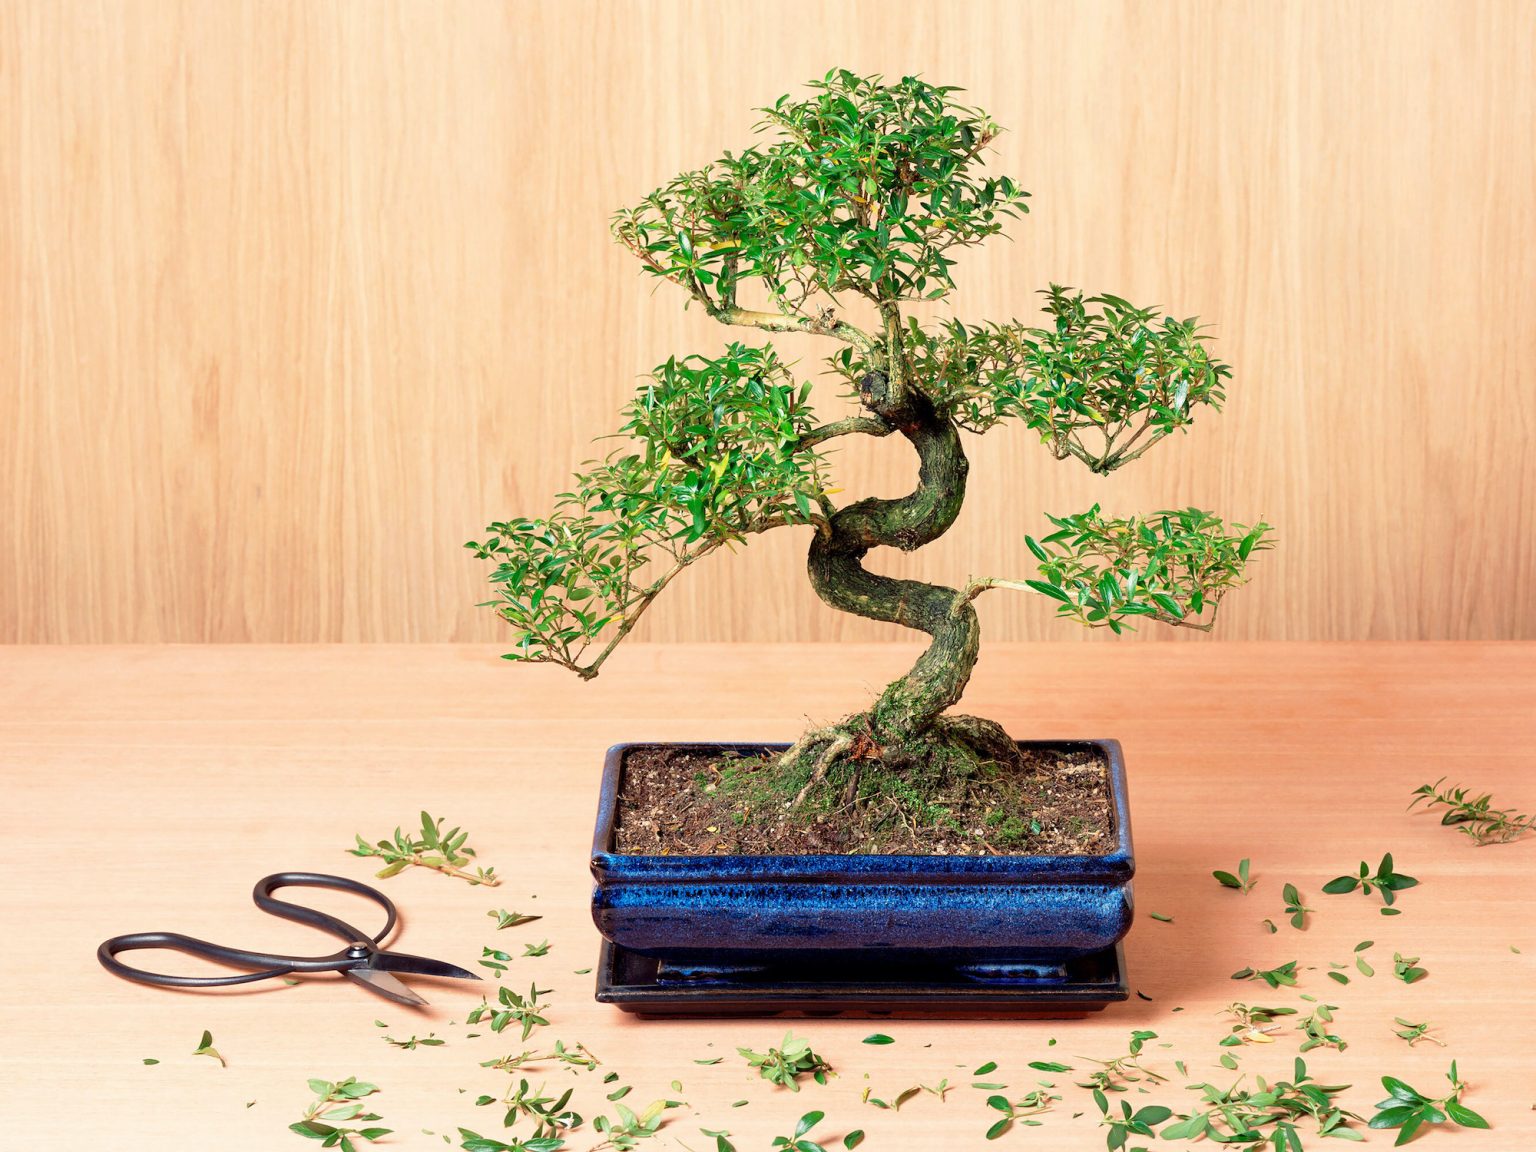 Ideia Decorar Como cultivar um bonsai dentro de casa - 11 dicas Como cultivar uma arvore de bonsai dentro de casa